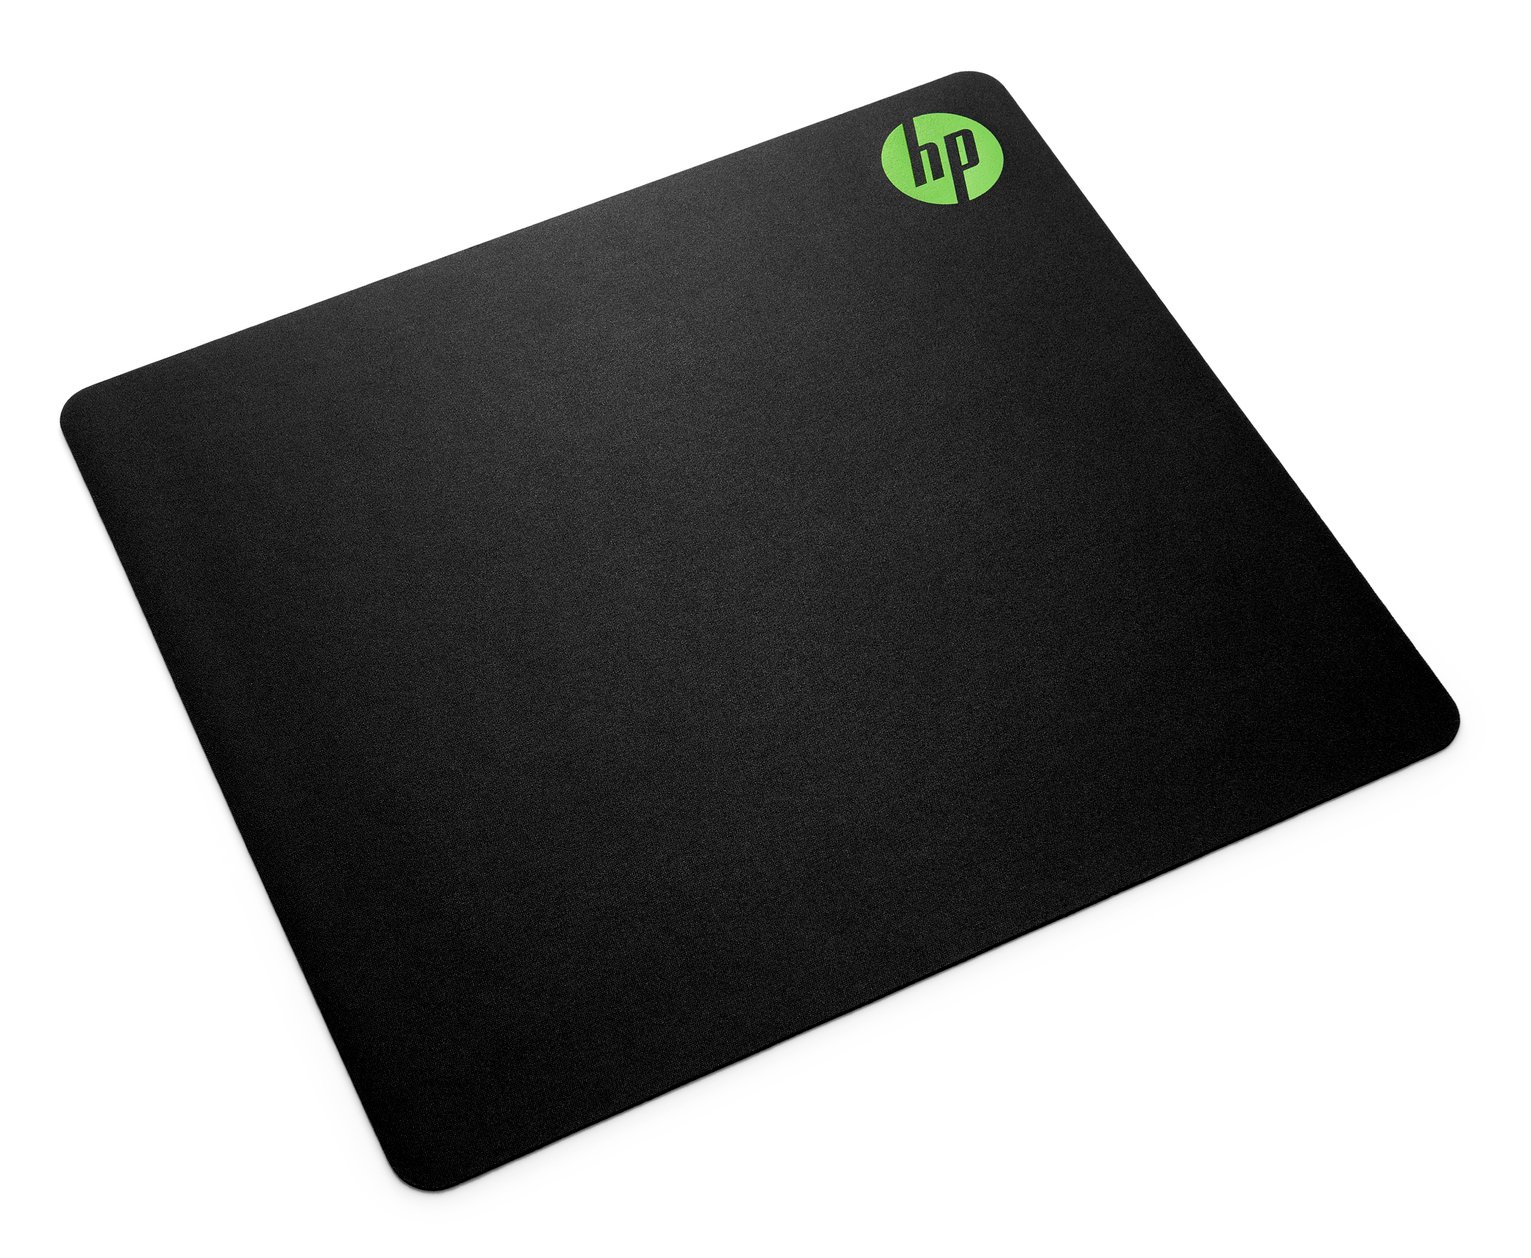 HP Pavilion 300 MS Mouse Pad - Black 